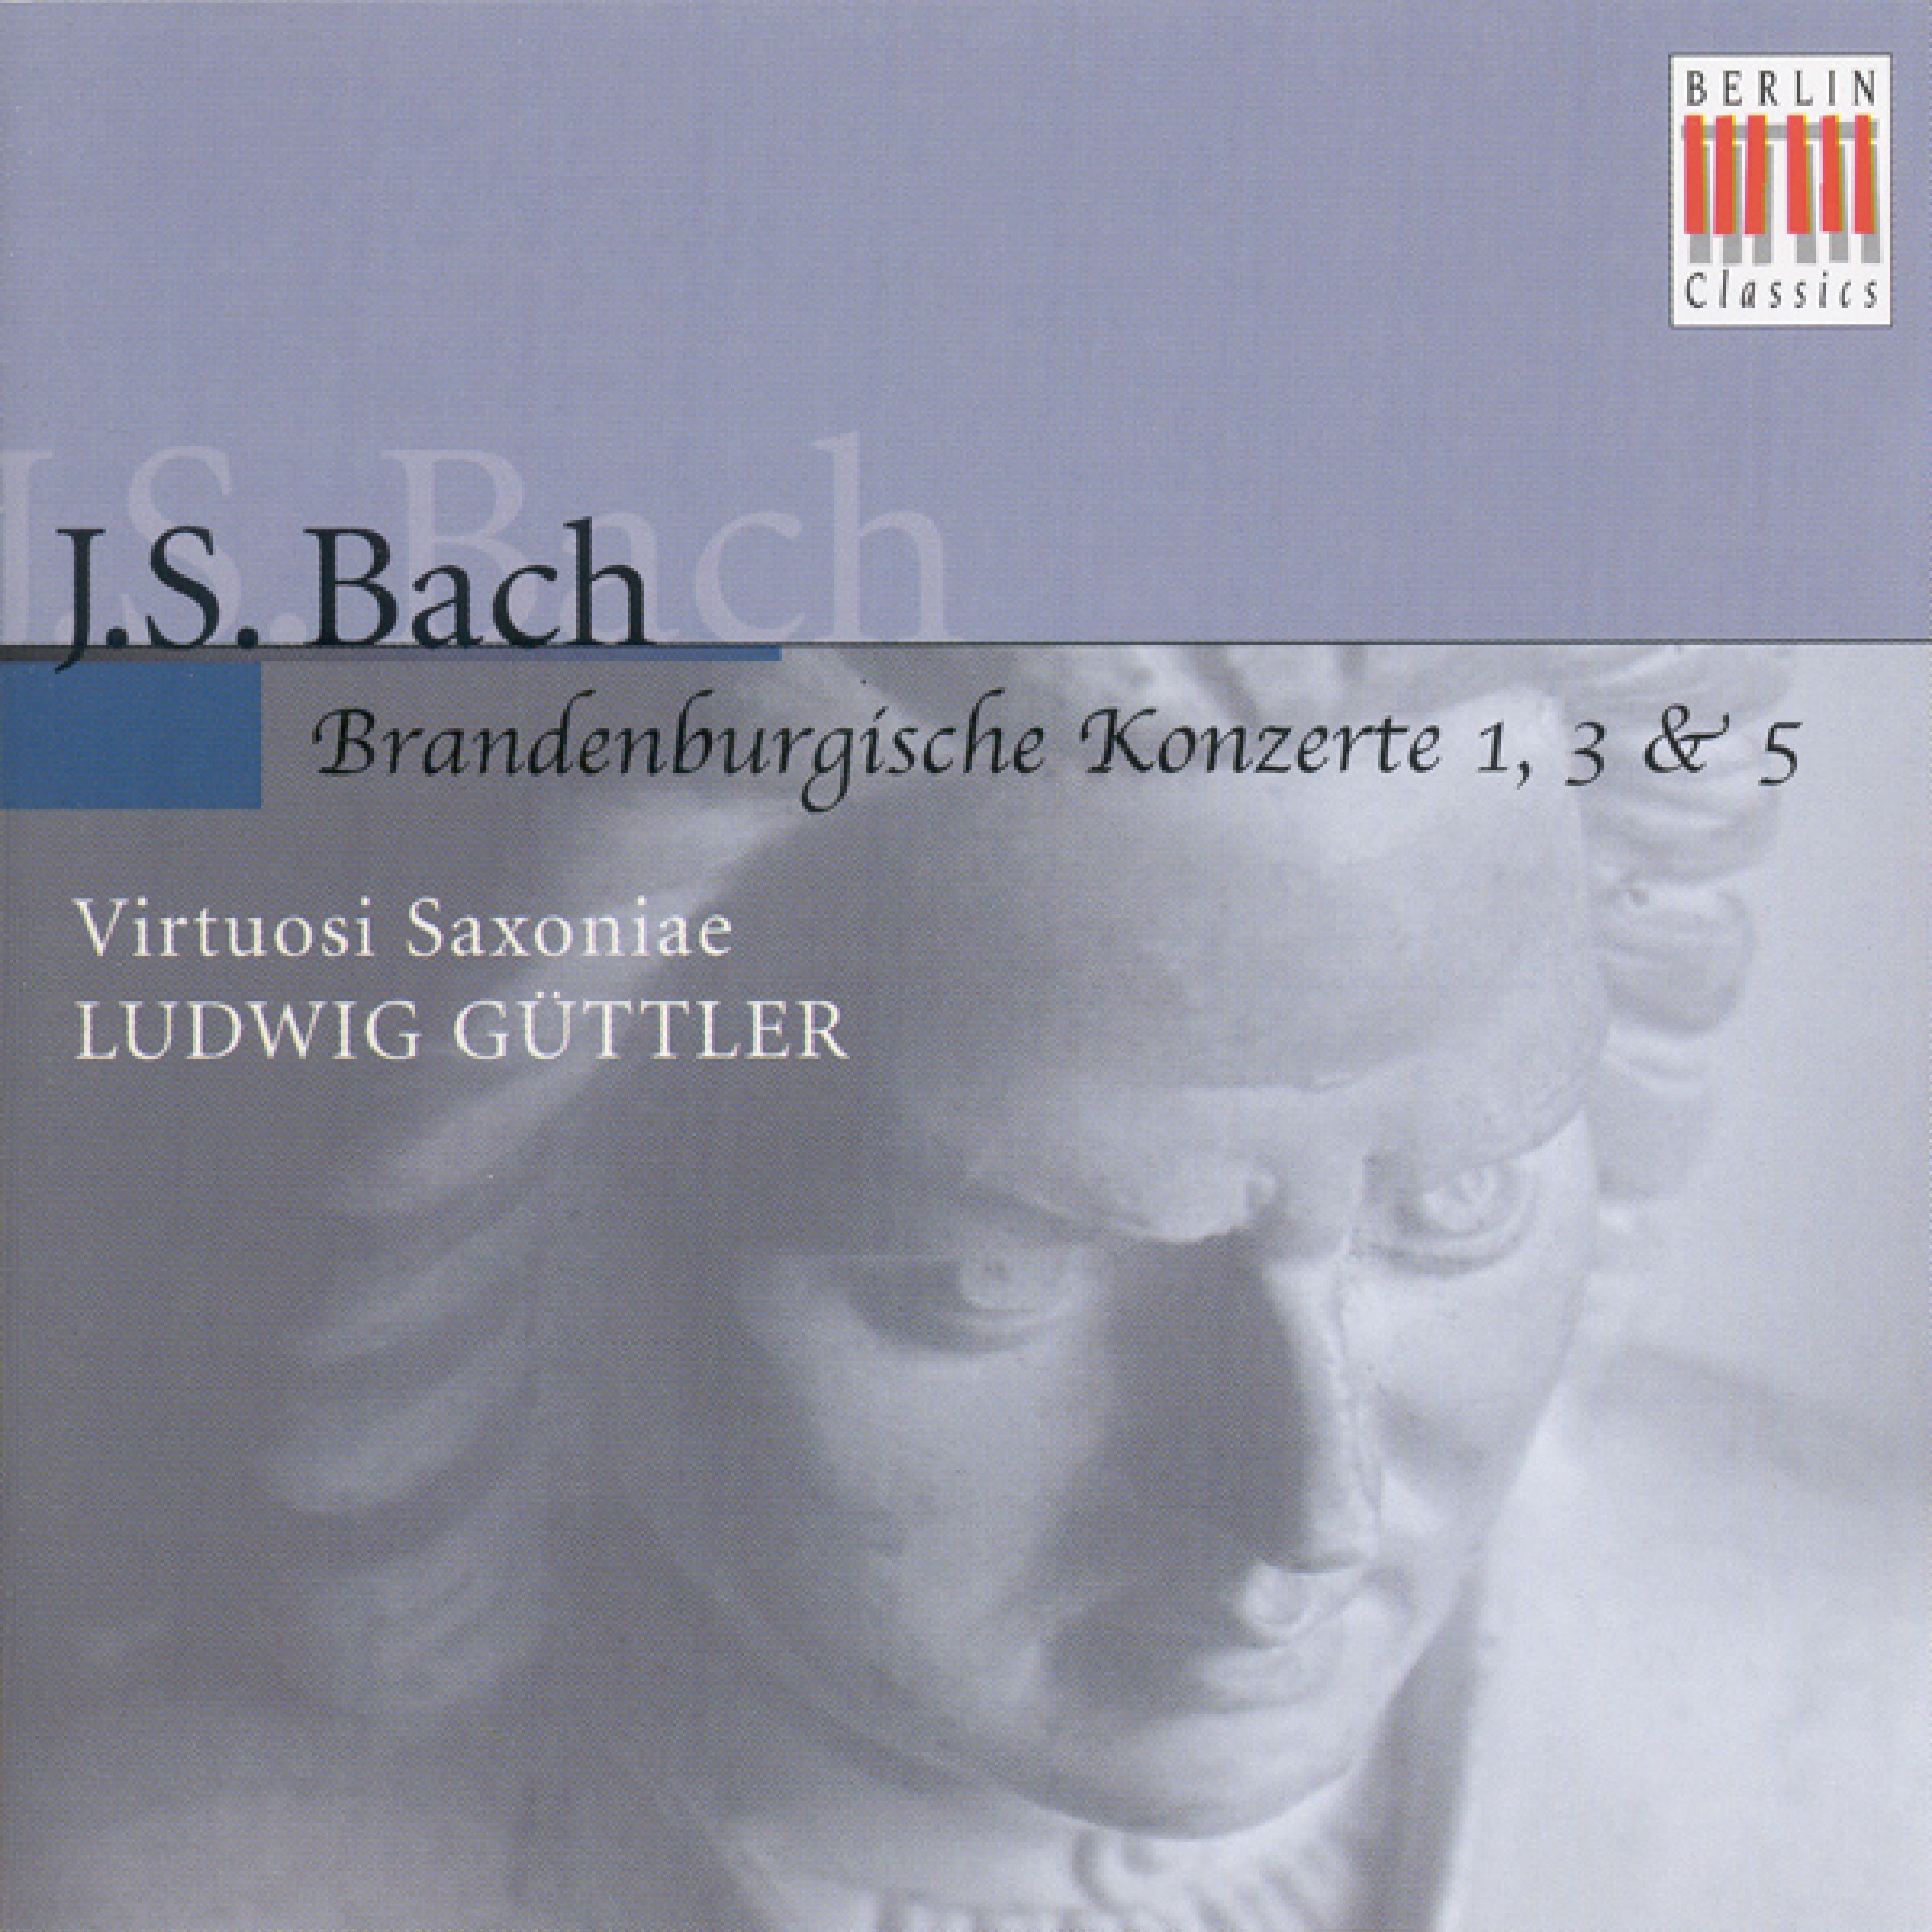 BACH, J.S.: Brandenburg Concertos Nos. 1, 3, 5 (Virtuosi Saxoniae, Guttler)